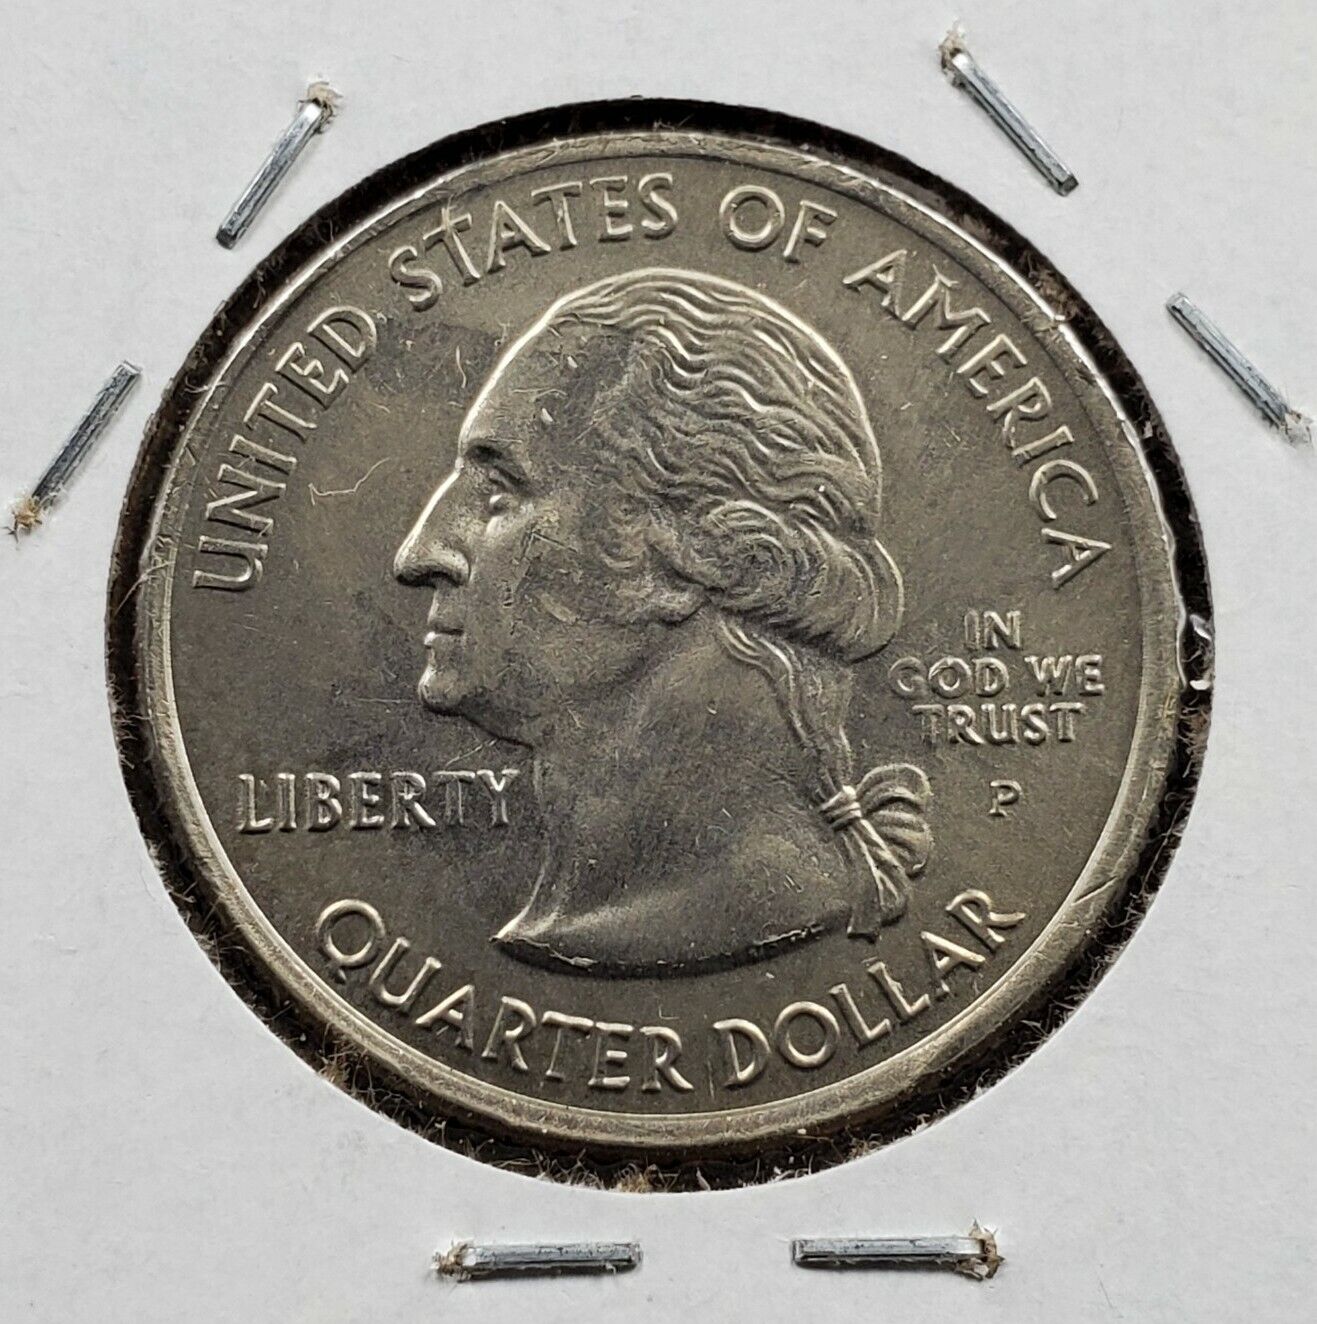 2007 Statehood State Quarter Coin Idaho UNC Struck Thru Grease Error